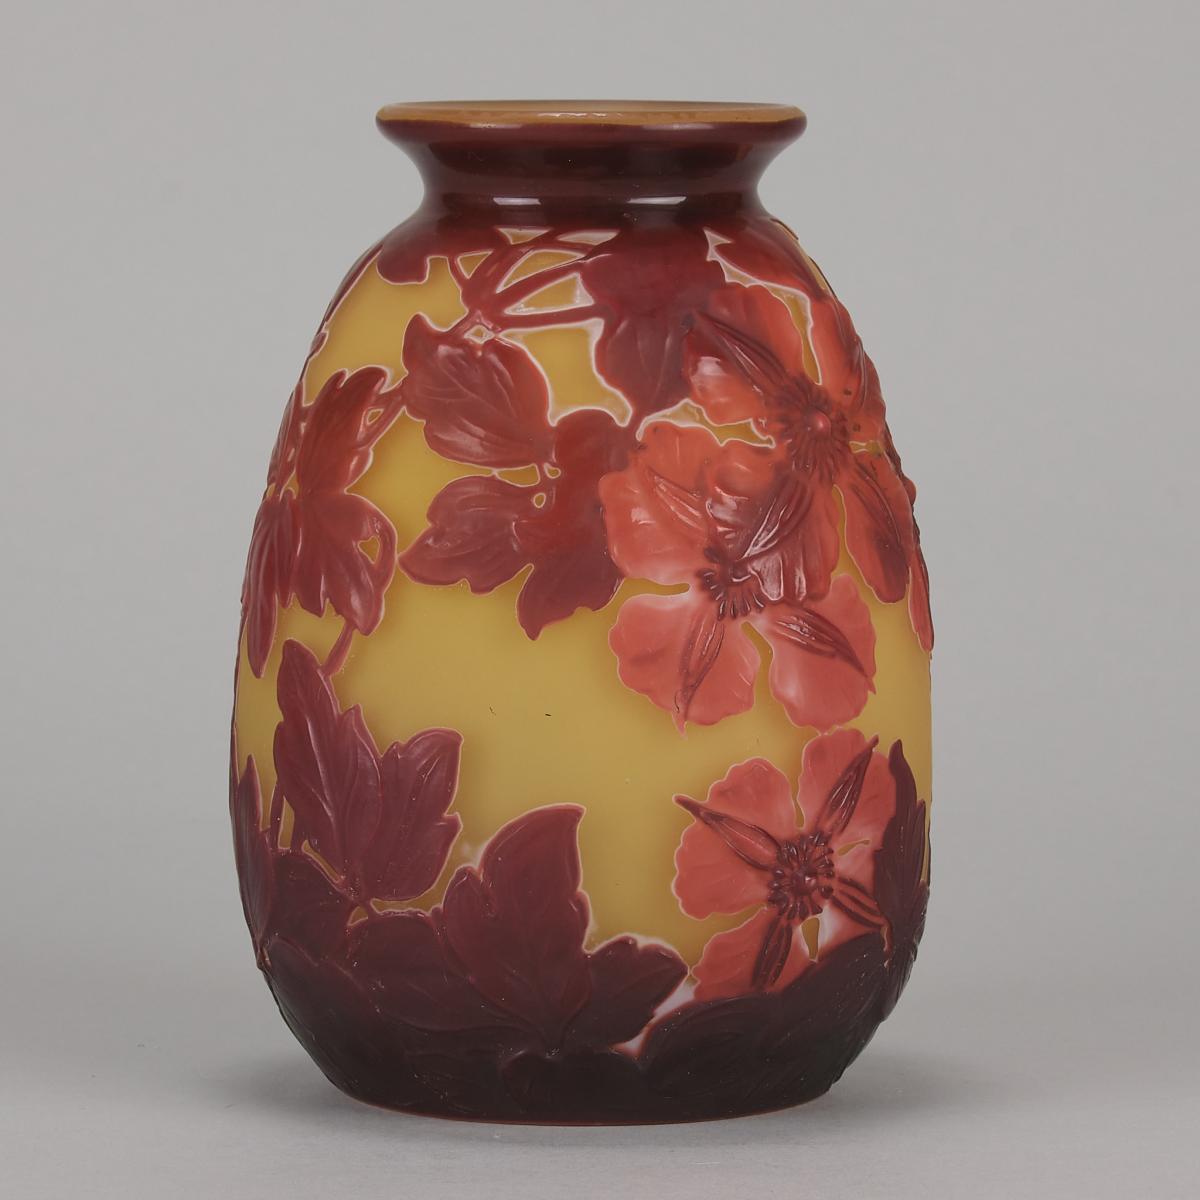 Early 20th Century Art Nouveau Vase "Floral Soufflé vase" by Emile Galle